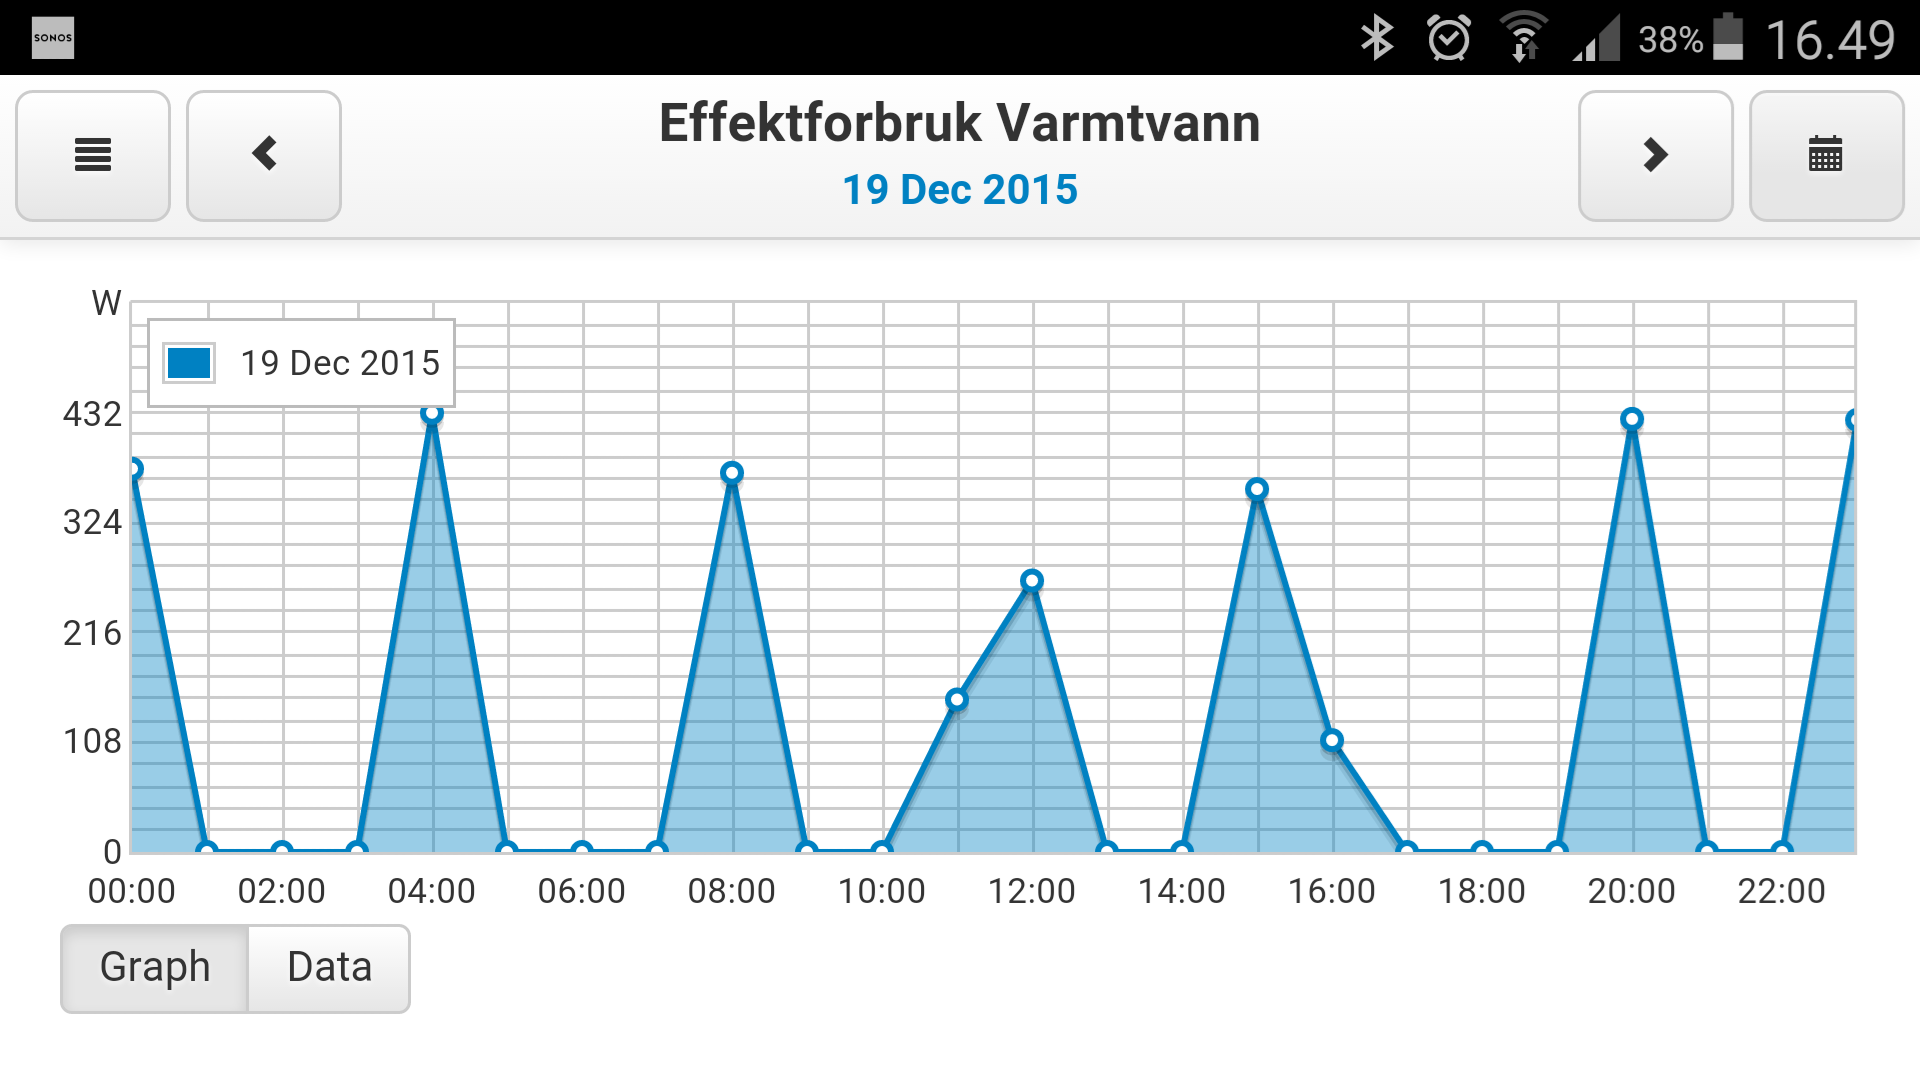 Bytte varmtvannsbereder, besparelse. - Screenshot_2015-12-22-16-49-23.png - Pål Arne Nygård